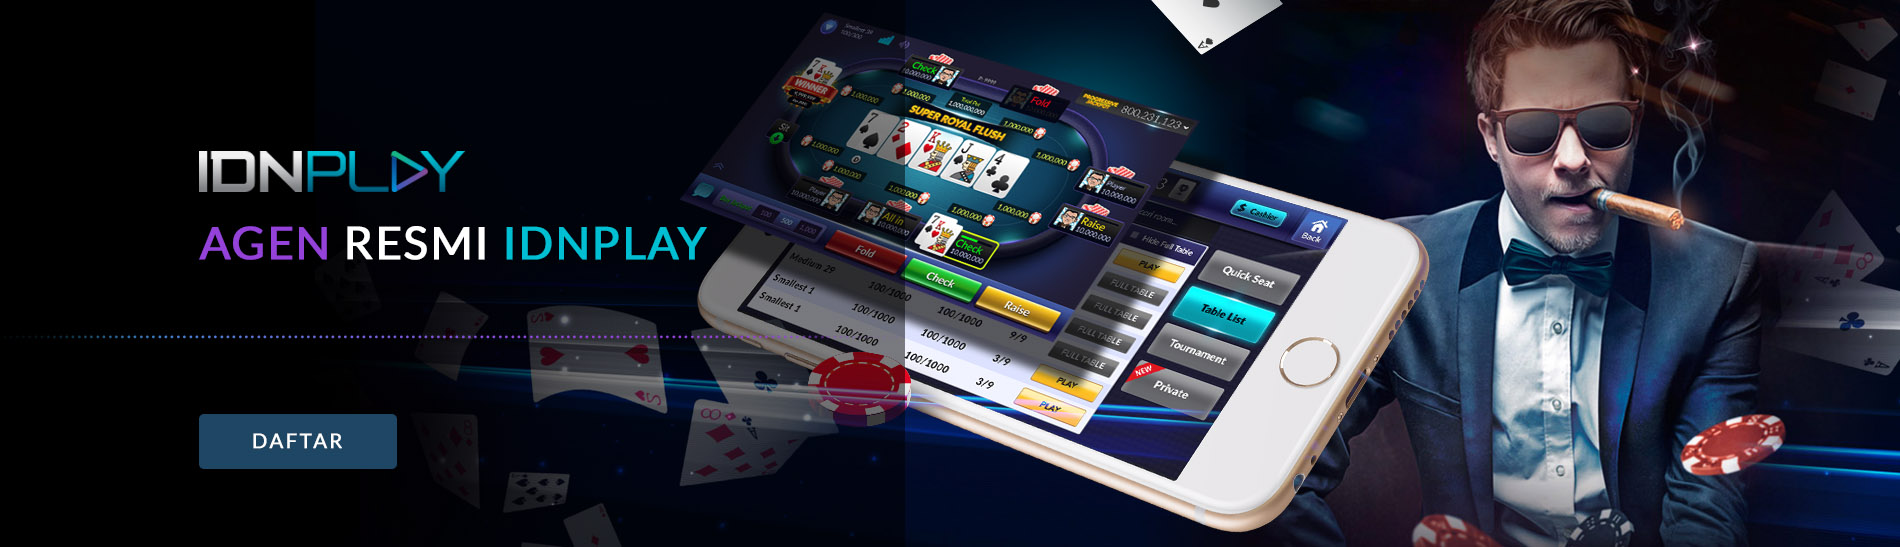 agen resmi idnplay poker